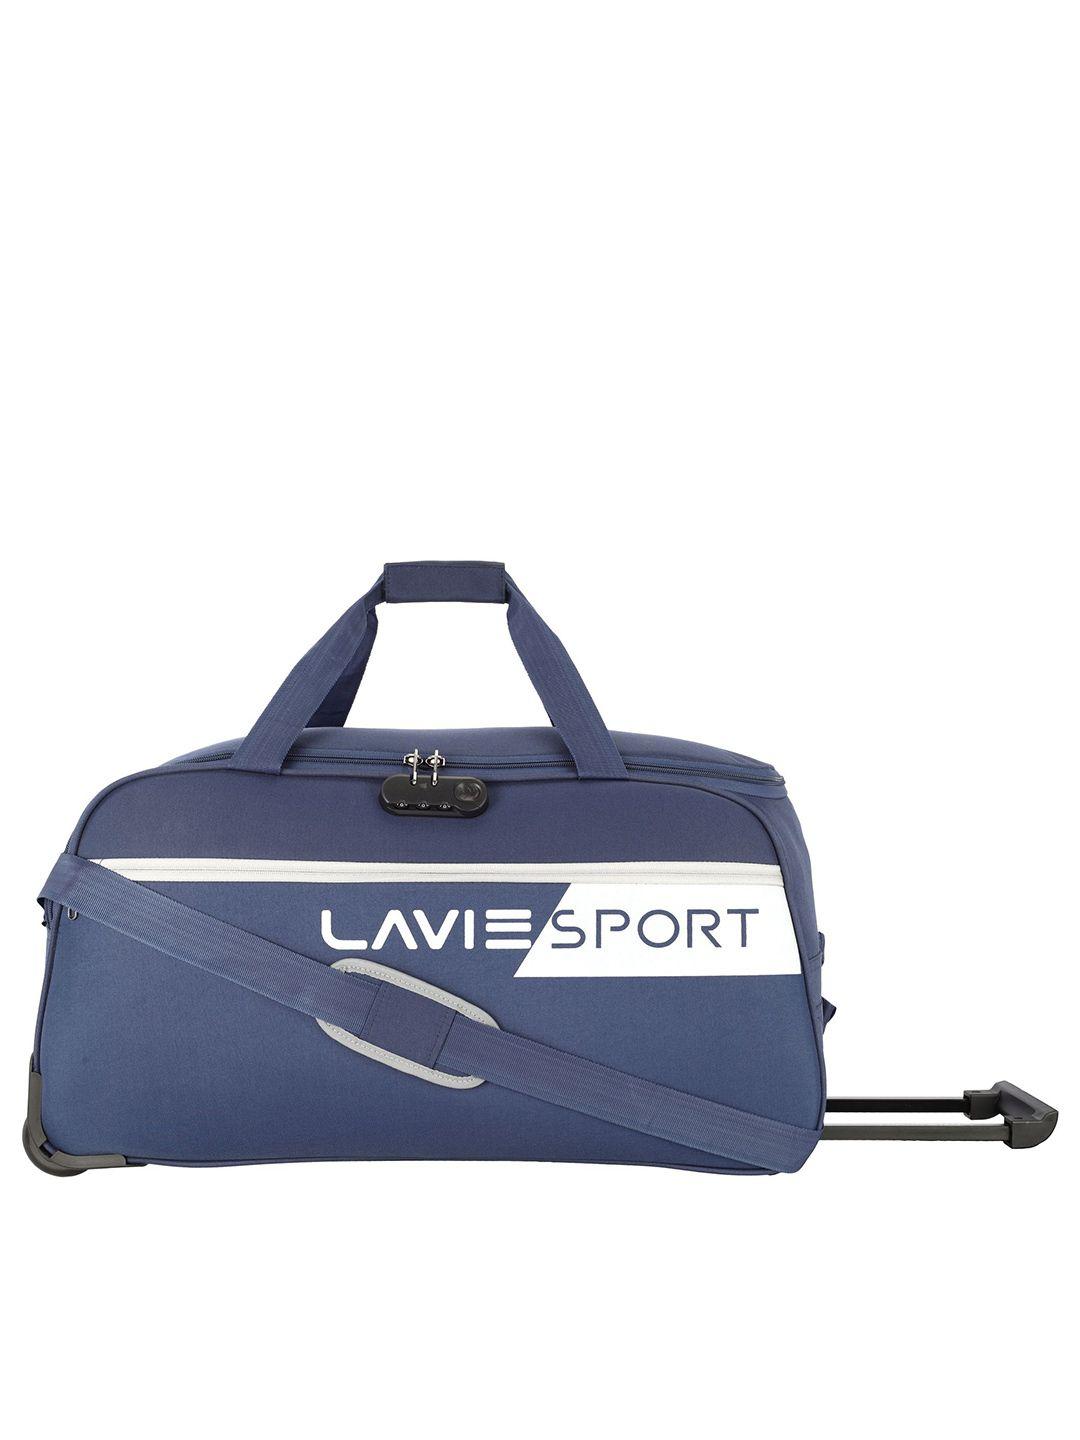 lavie sport navy blue duffel printed bag